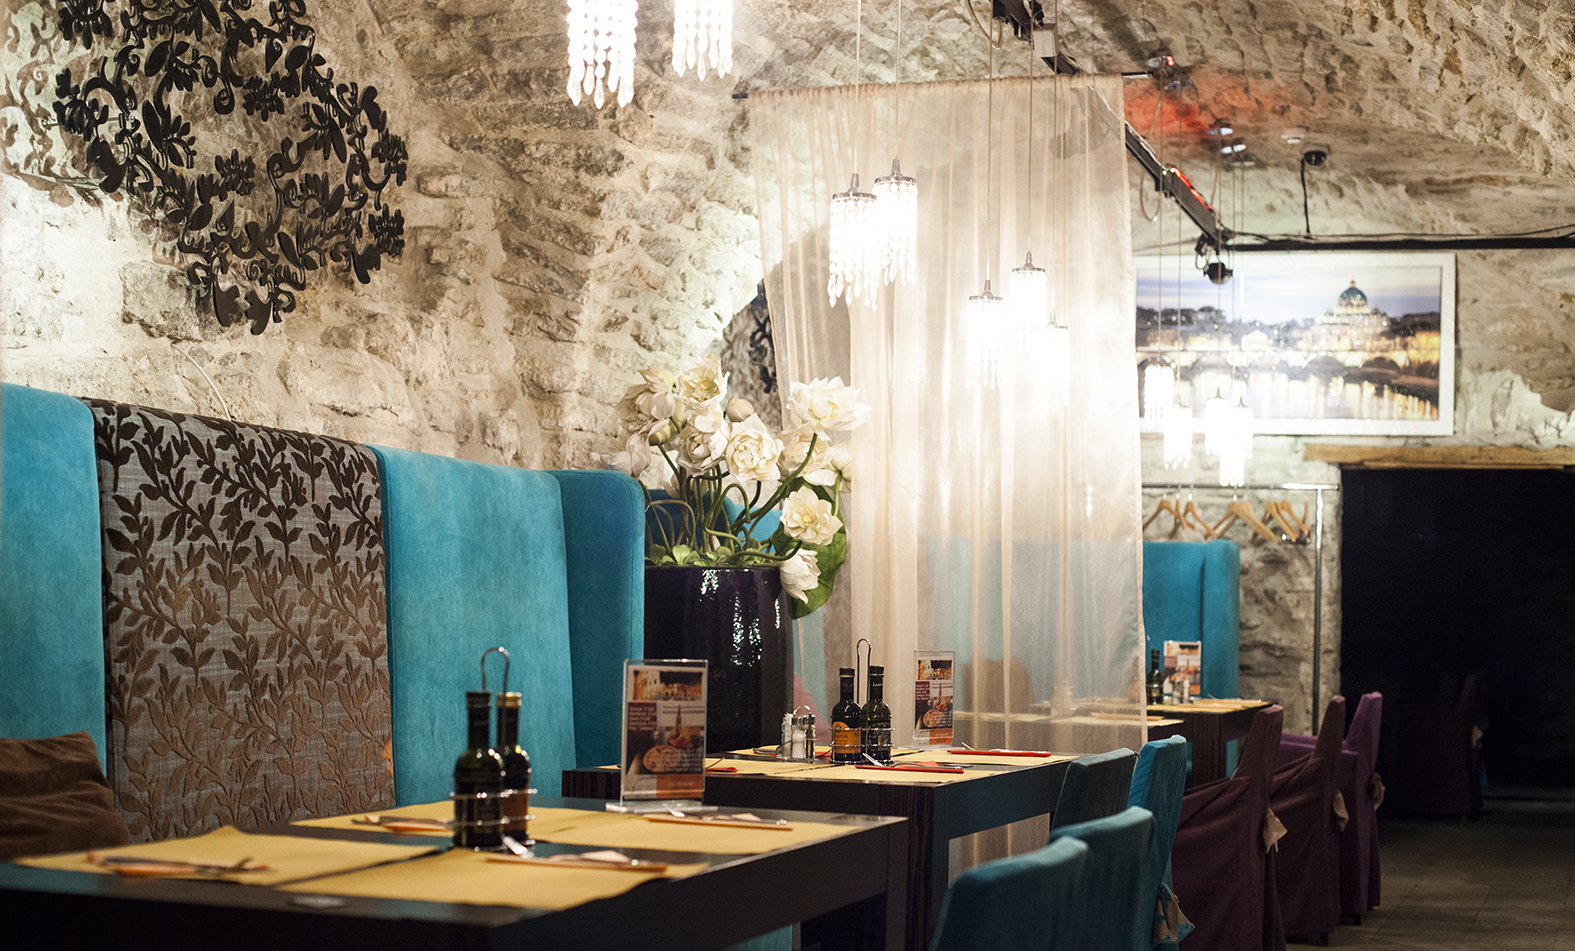 Gladiatori: a delicious addition to Tallinn’s restaurant scene.